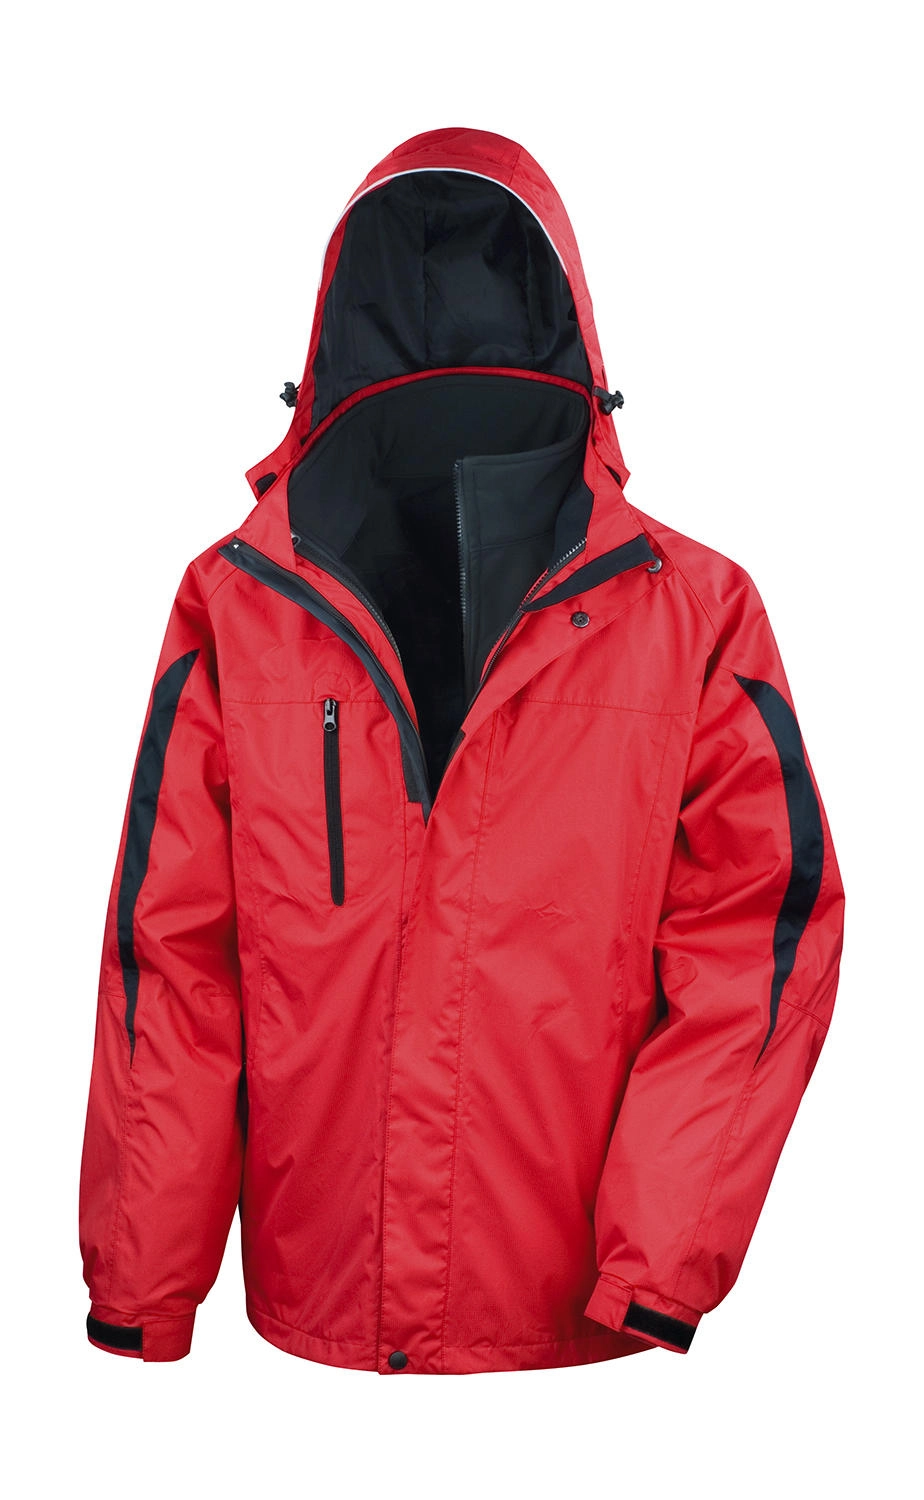 3-in-1 Journey Jacket zum Besticken und Bedrucken in der Farbe Red/Black mit Ihren Logo, Schriftzug oder Motiv.